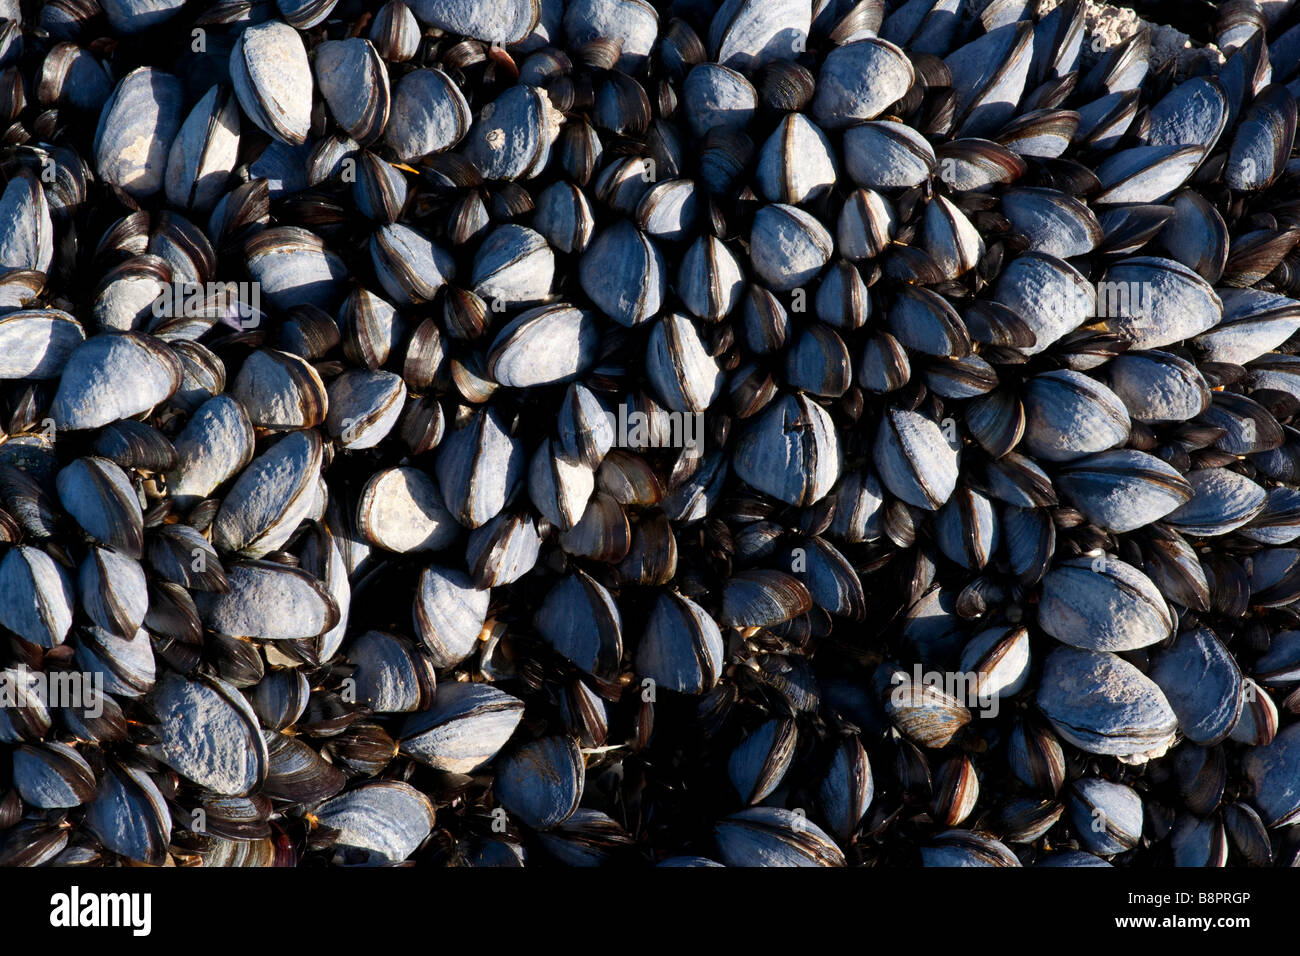 Common mussel, Mytilus edulis Stock Photo